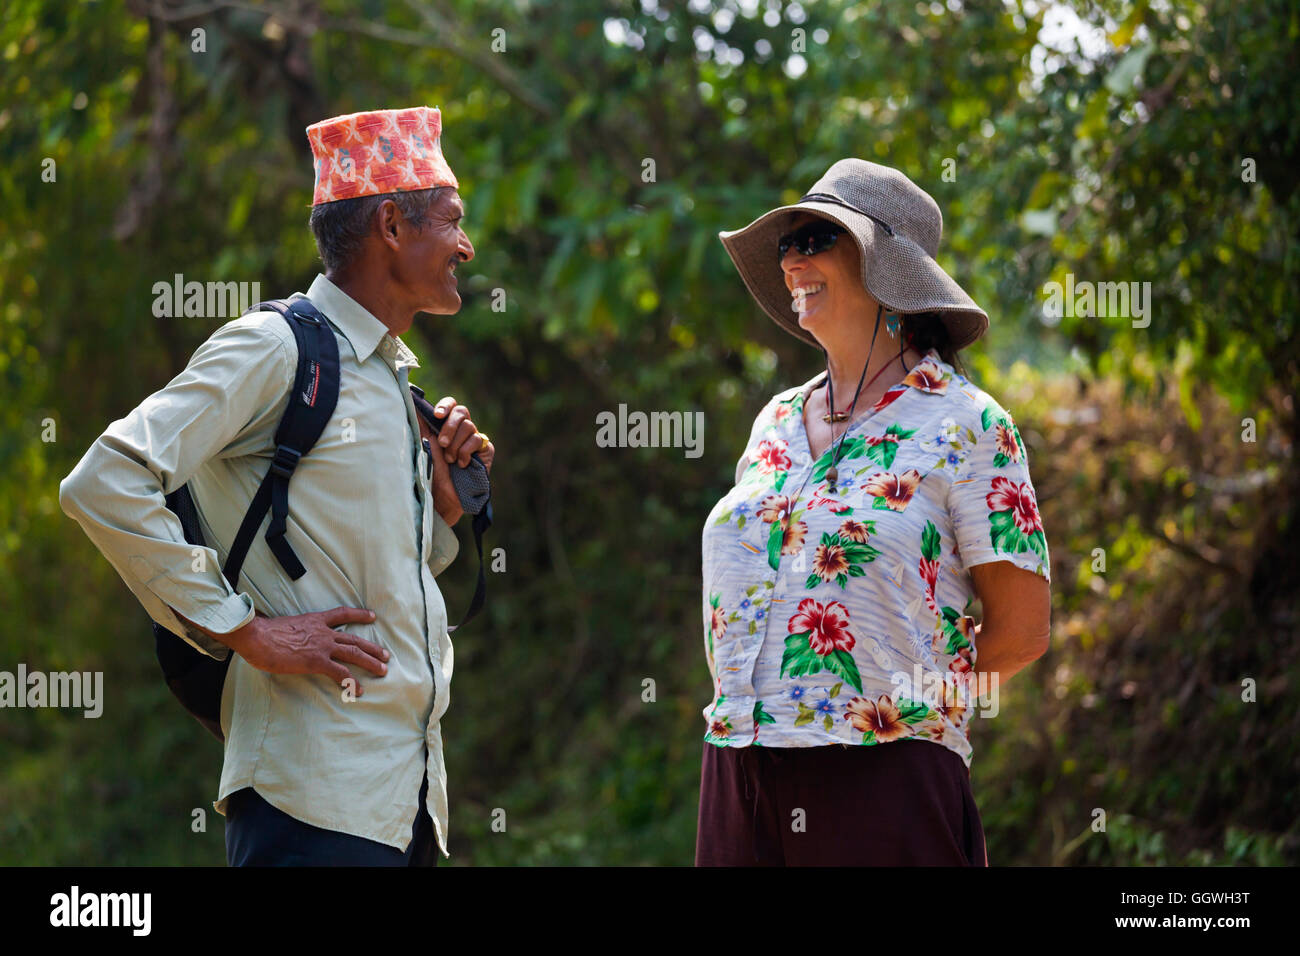 Christine Kolisch parle à un villageois tout en faisant l'aide aux victimes du séisme - Népal Banque D'Images